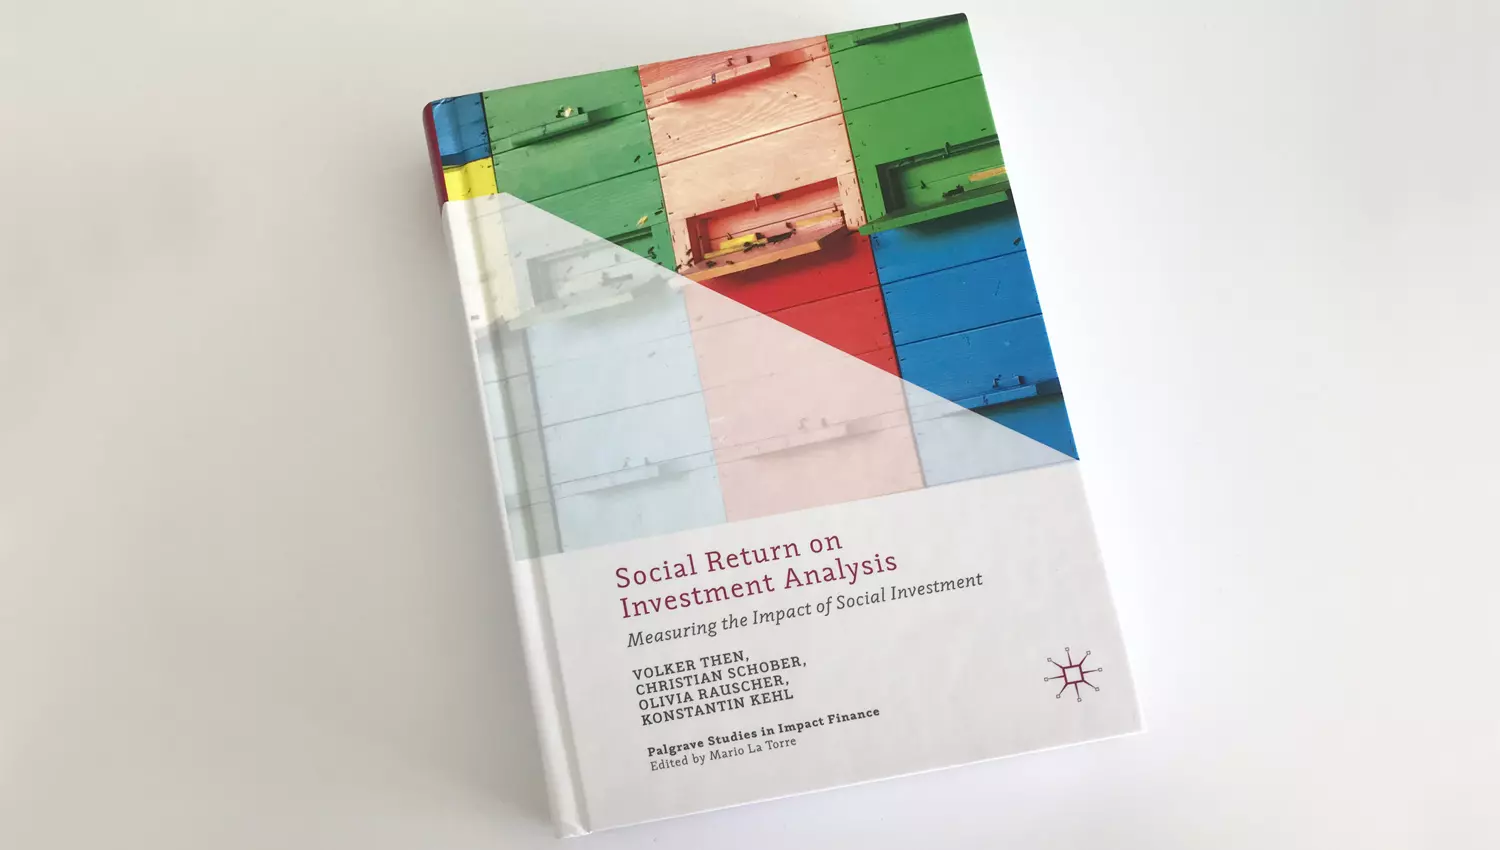 Buchdeckel des Buches "Social Return on Investment Analysis"